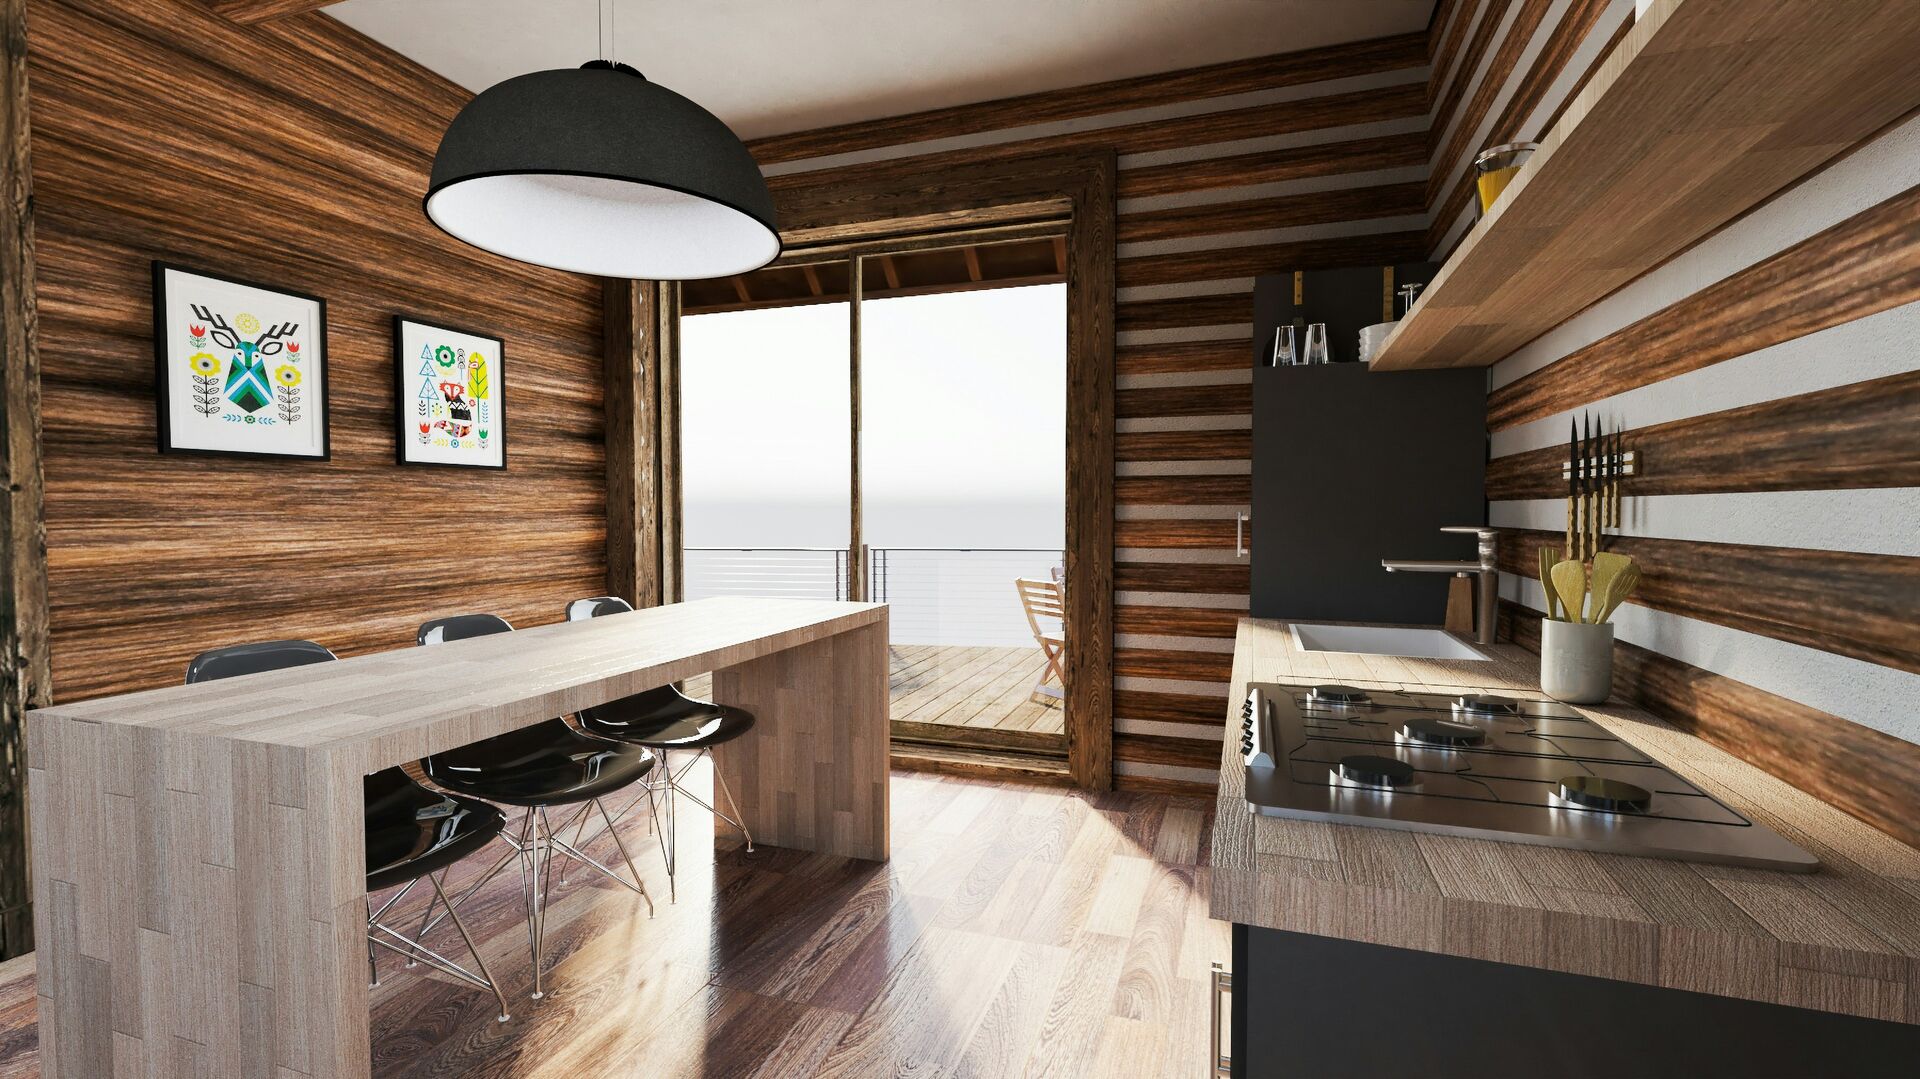 Modern cabin kitchen design, wood and white cabin kitchen